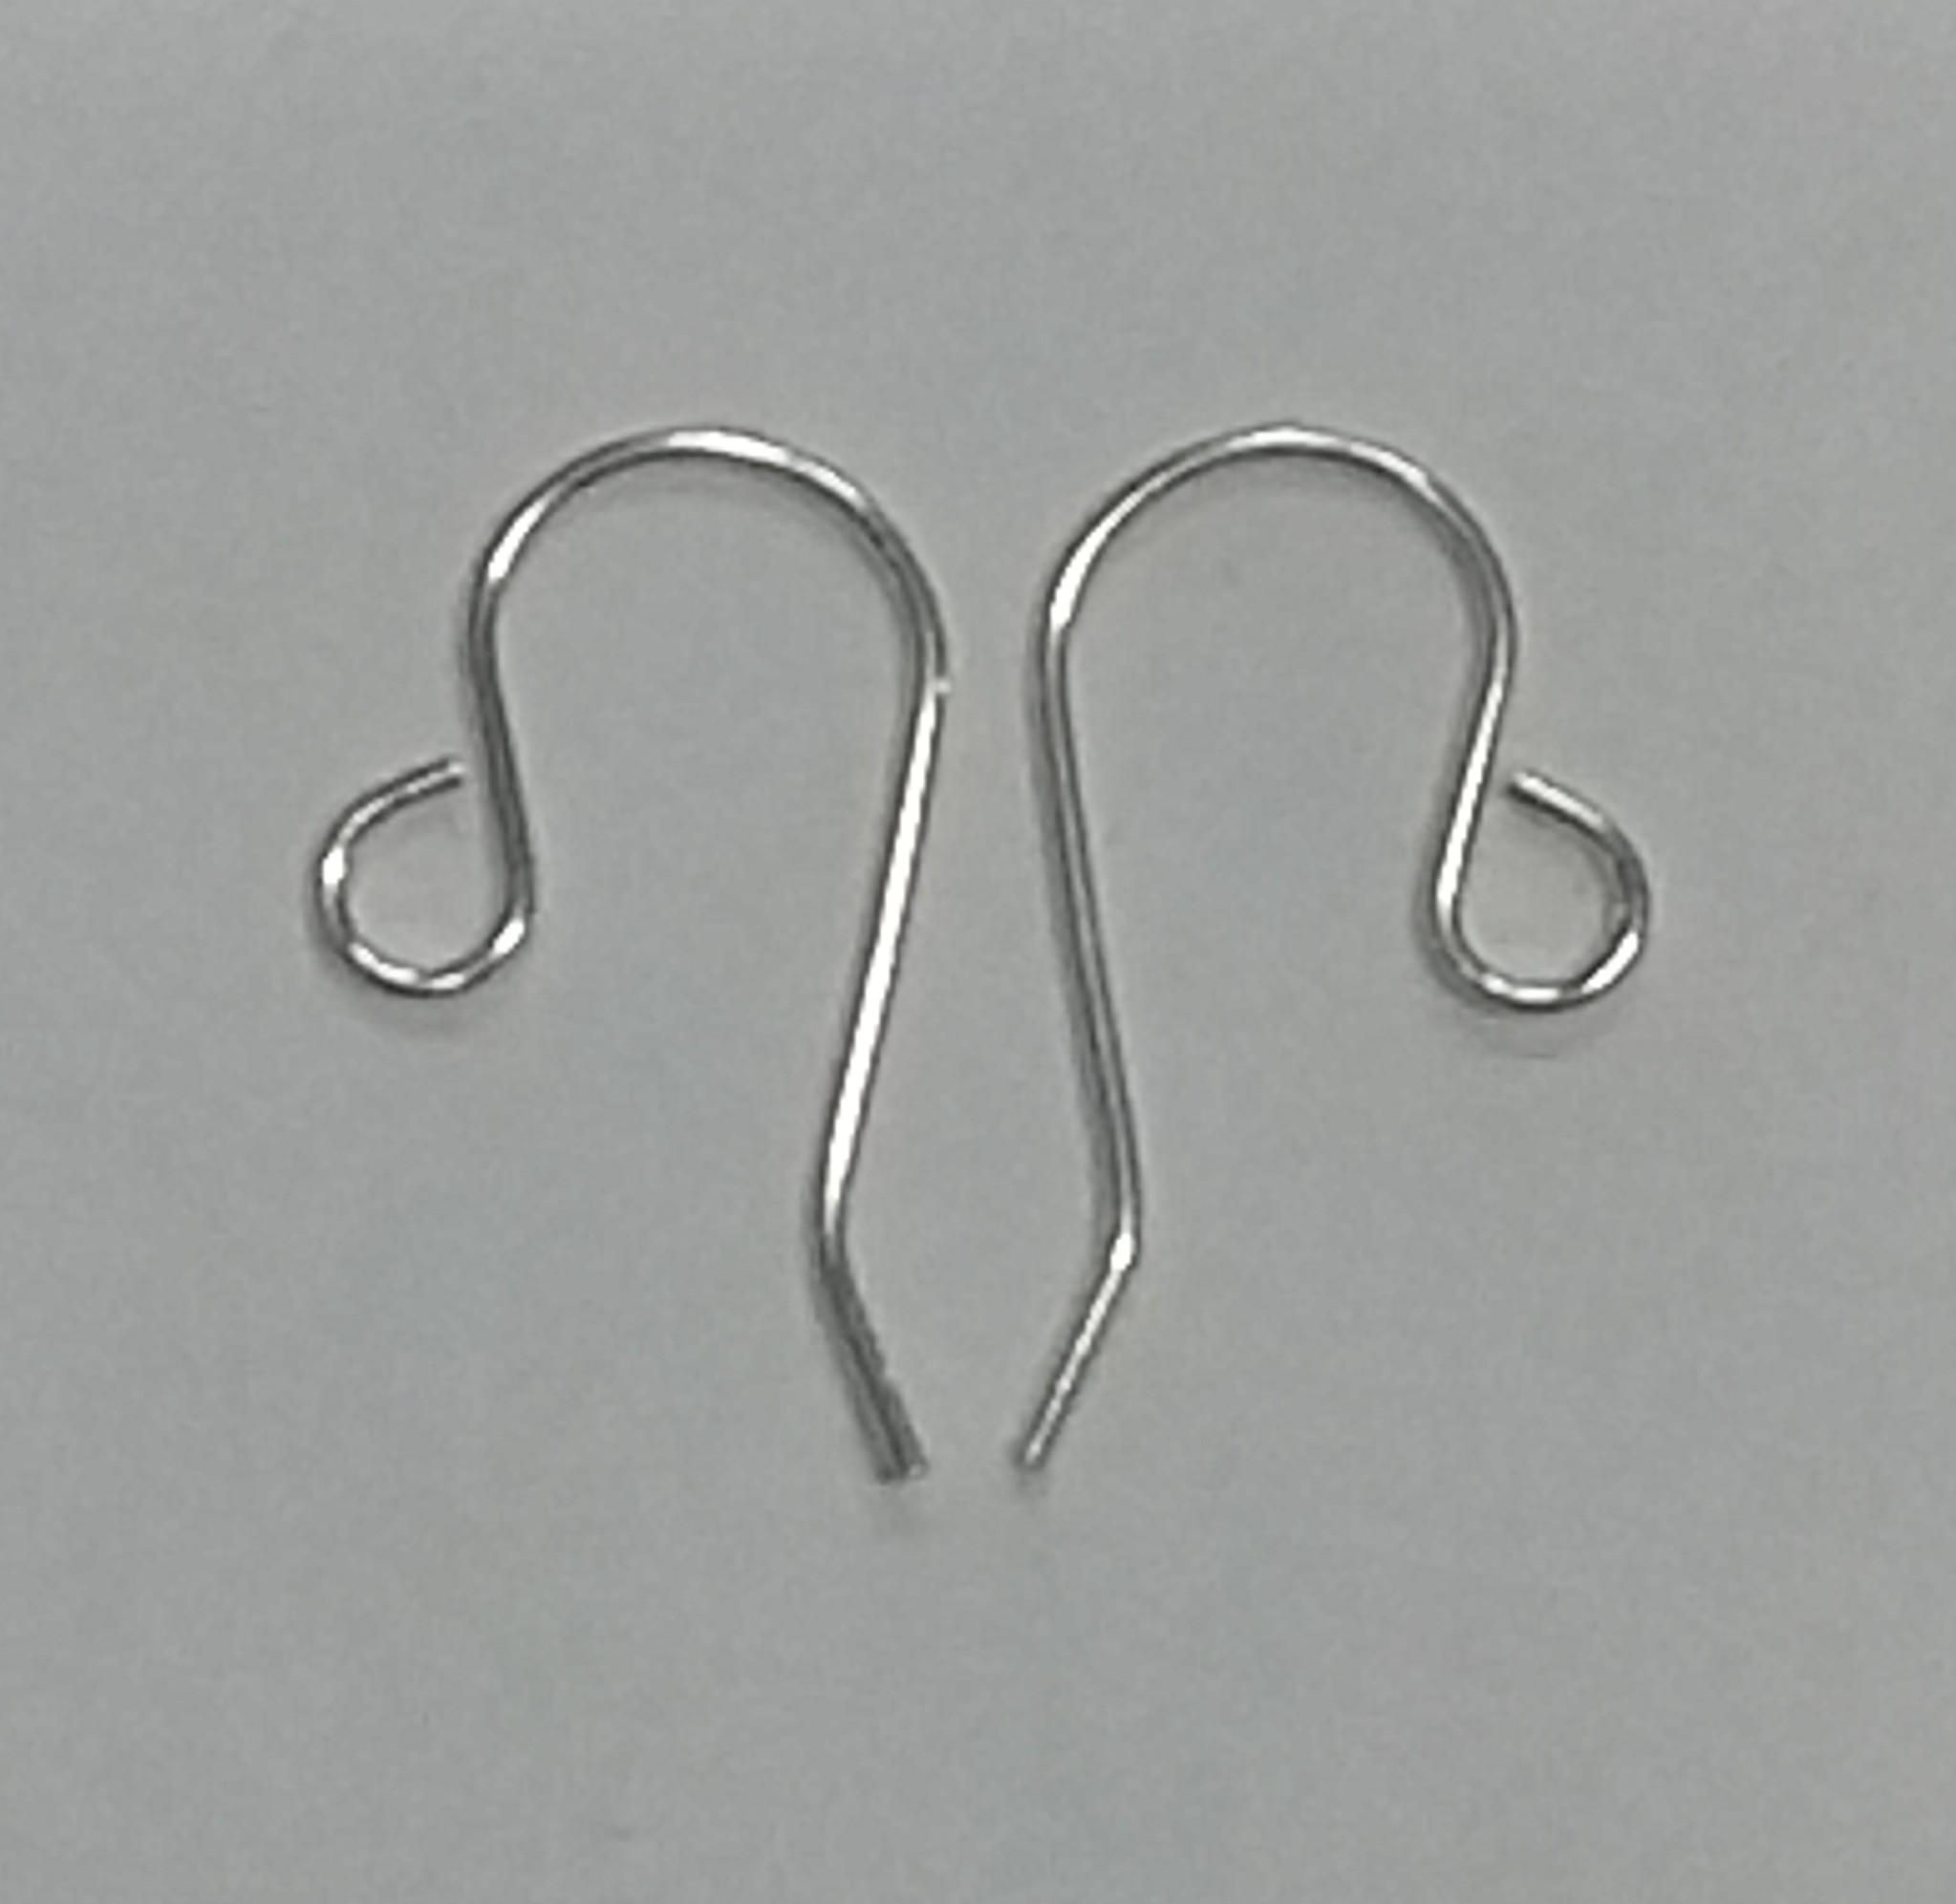  20 Sterling Silver Fish Hook Earrings Earwires w/Coil